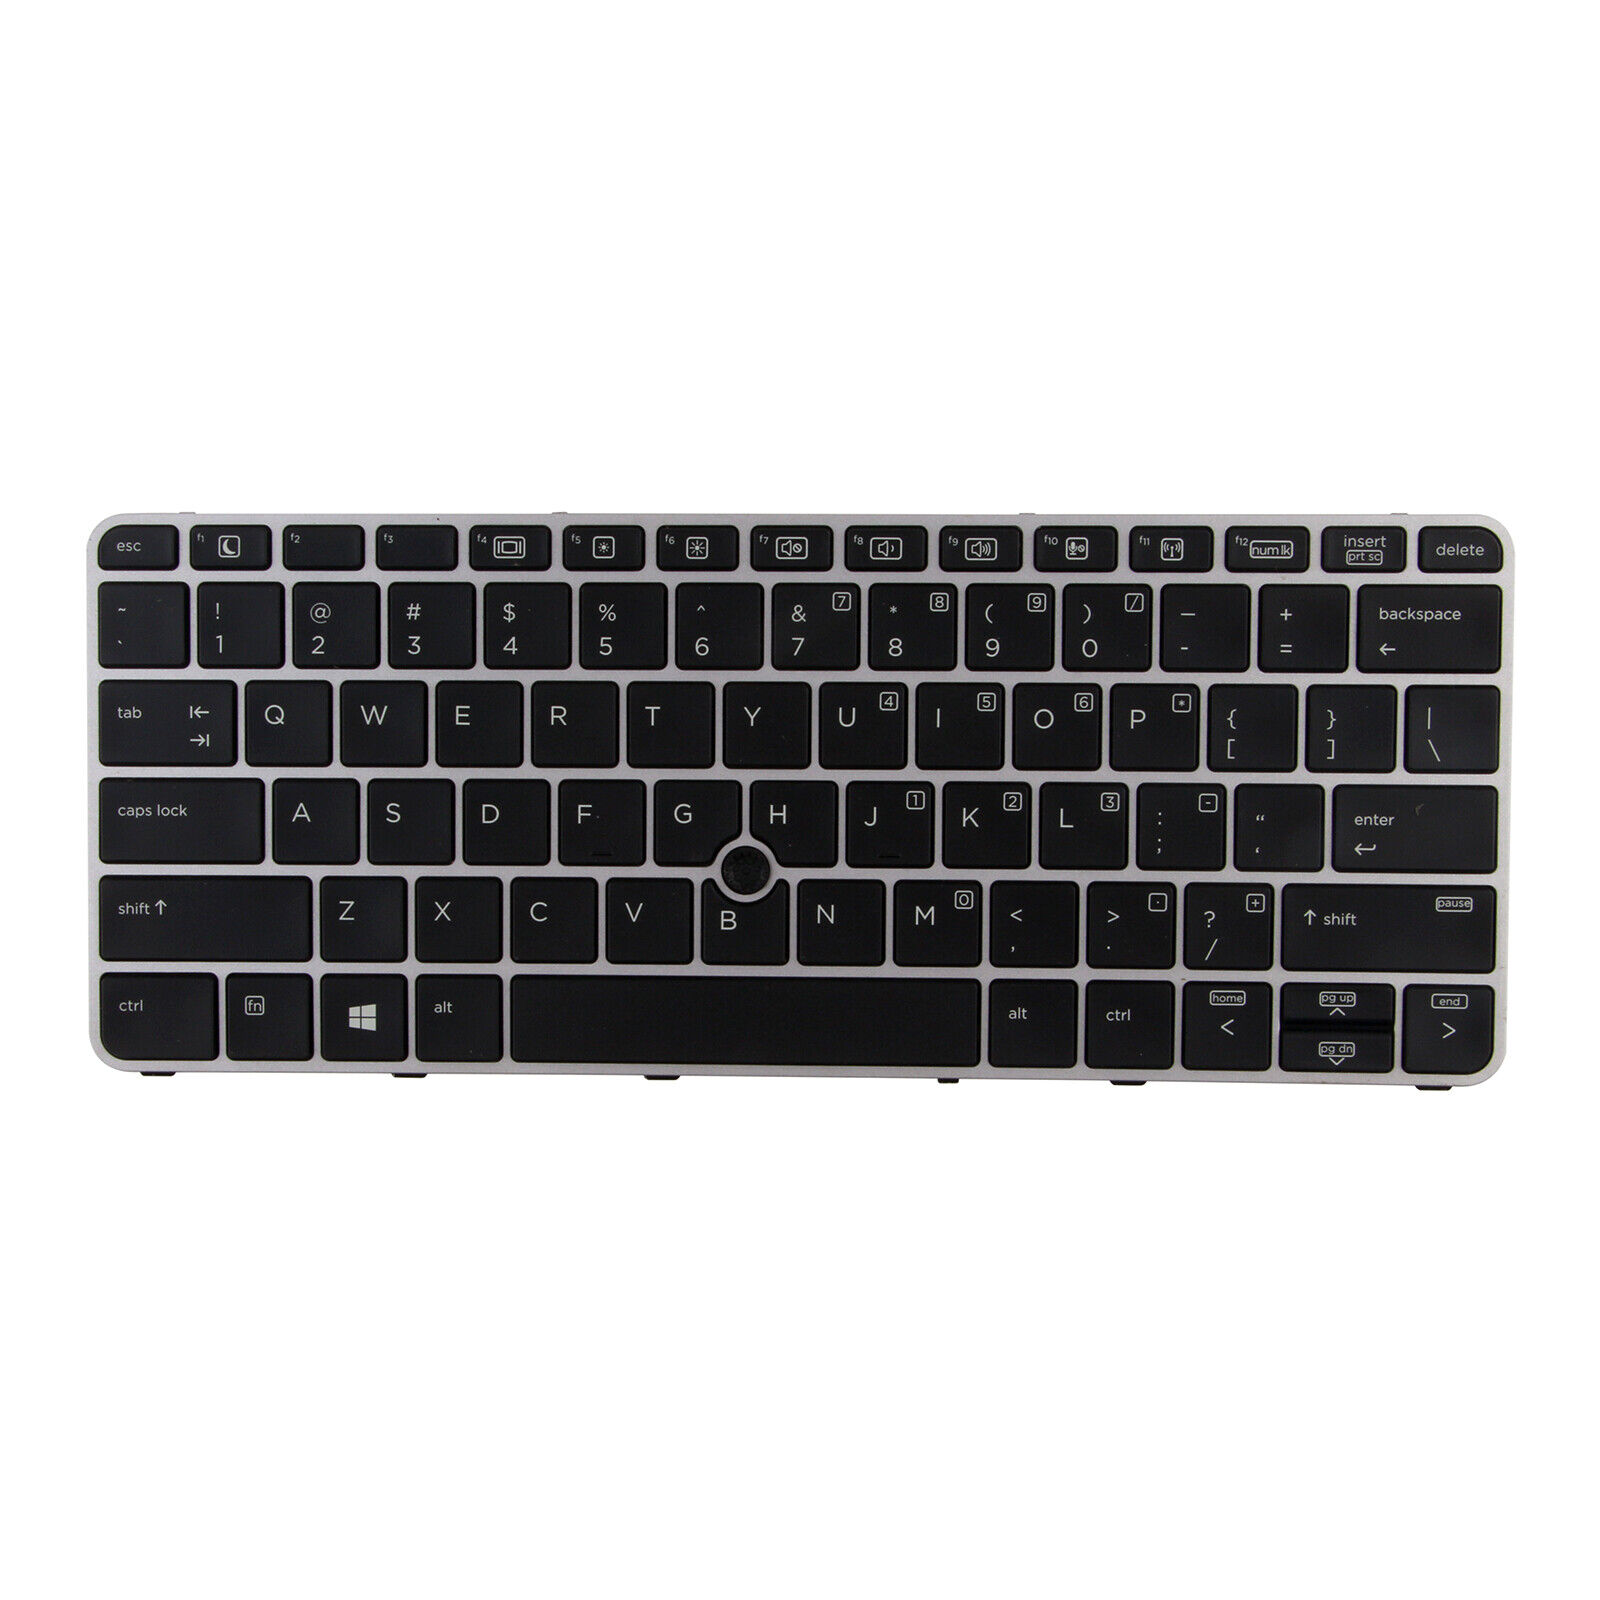 Original US Keyboard Fit HP EliteBook 725 G3 725 G4 820 G3 820 G4 813302-001